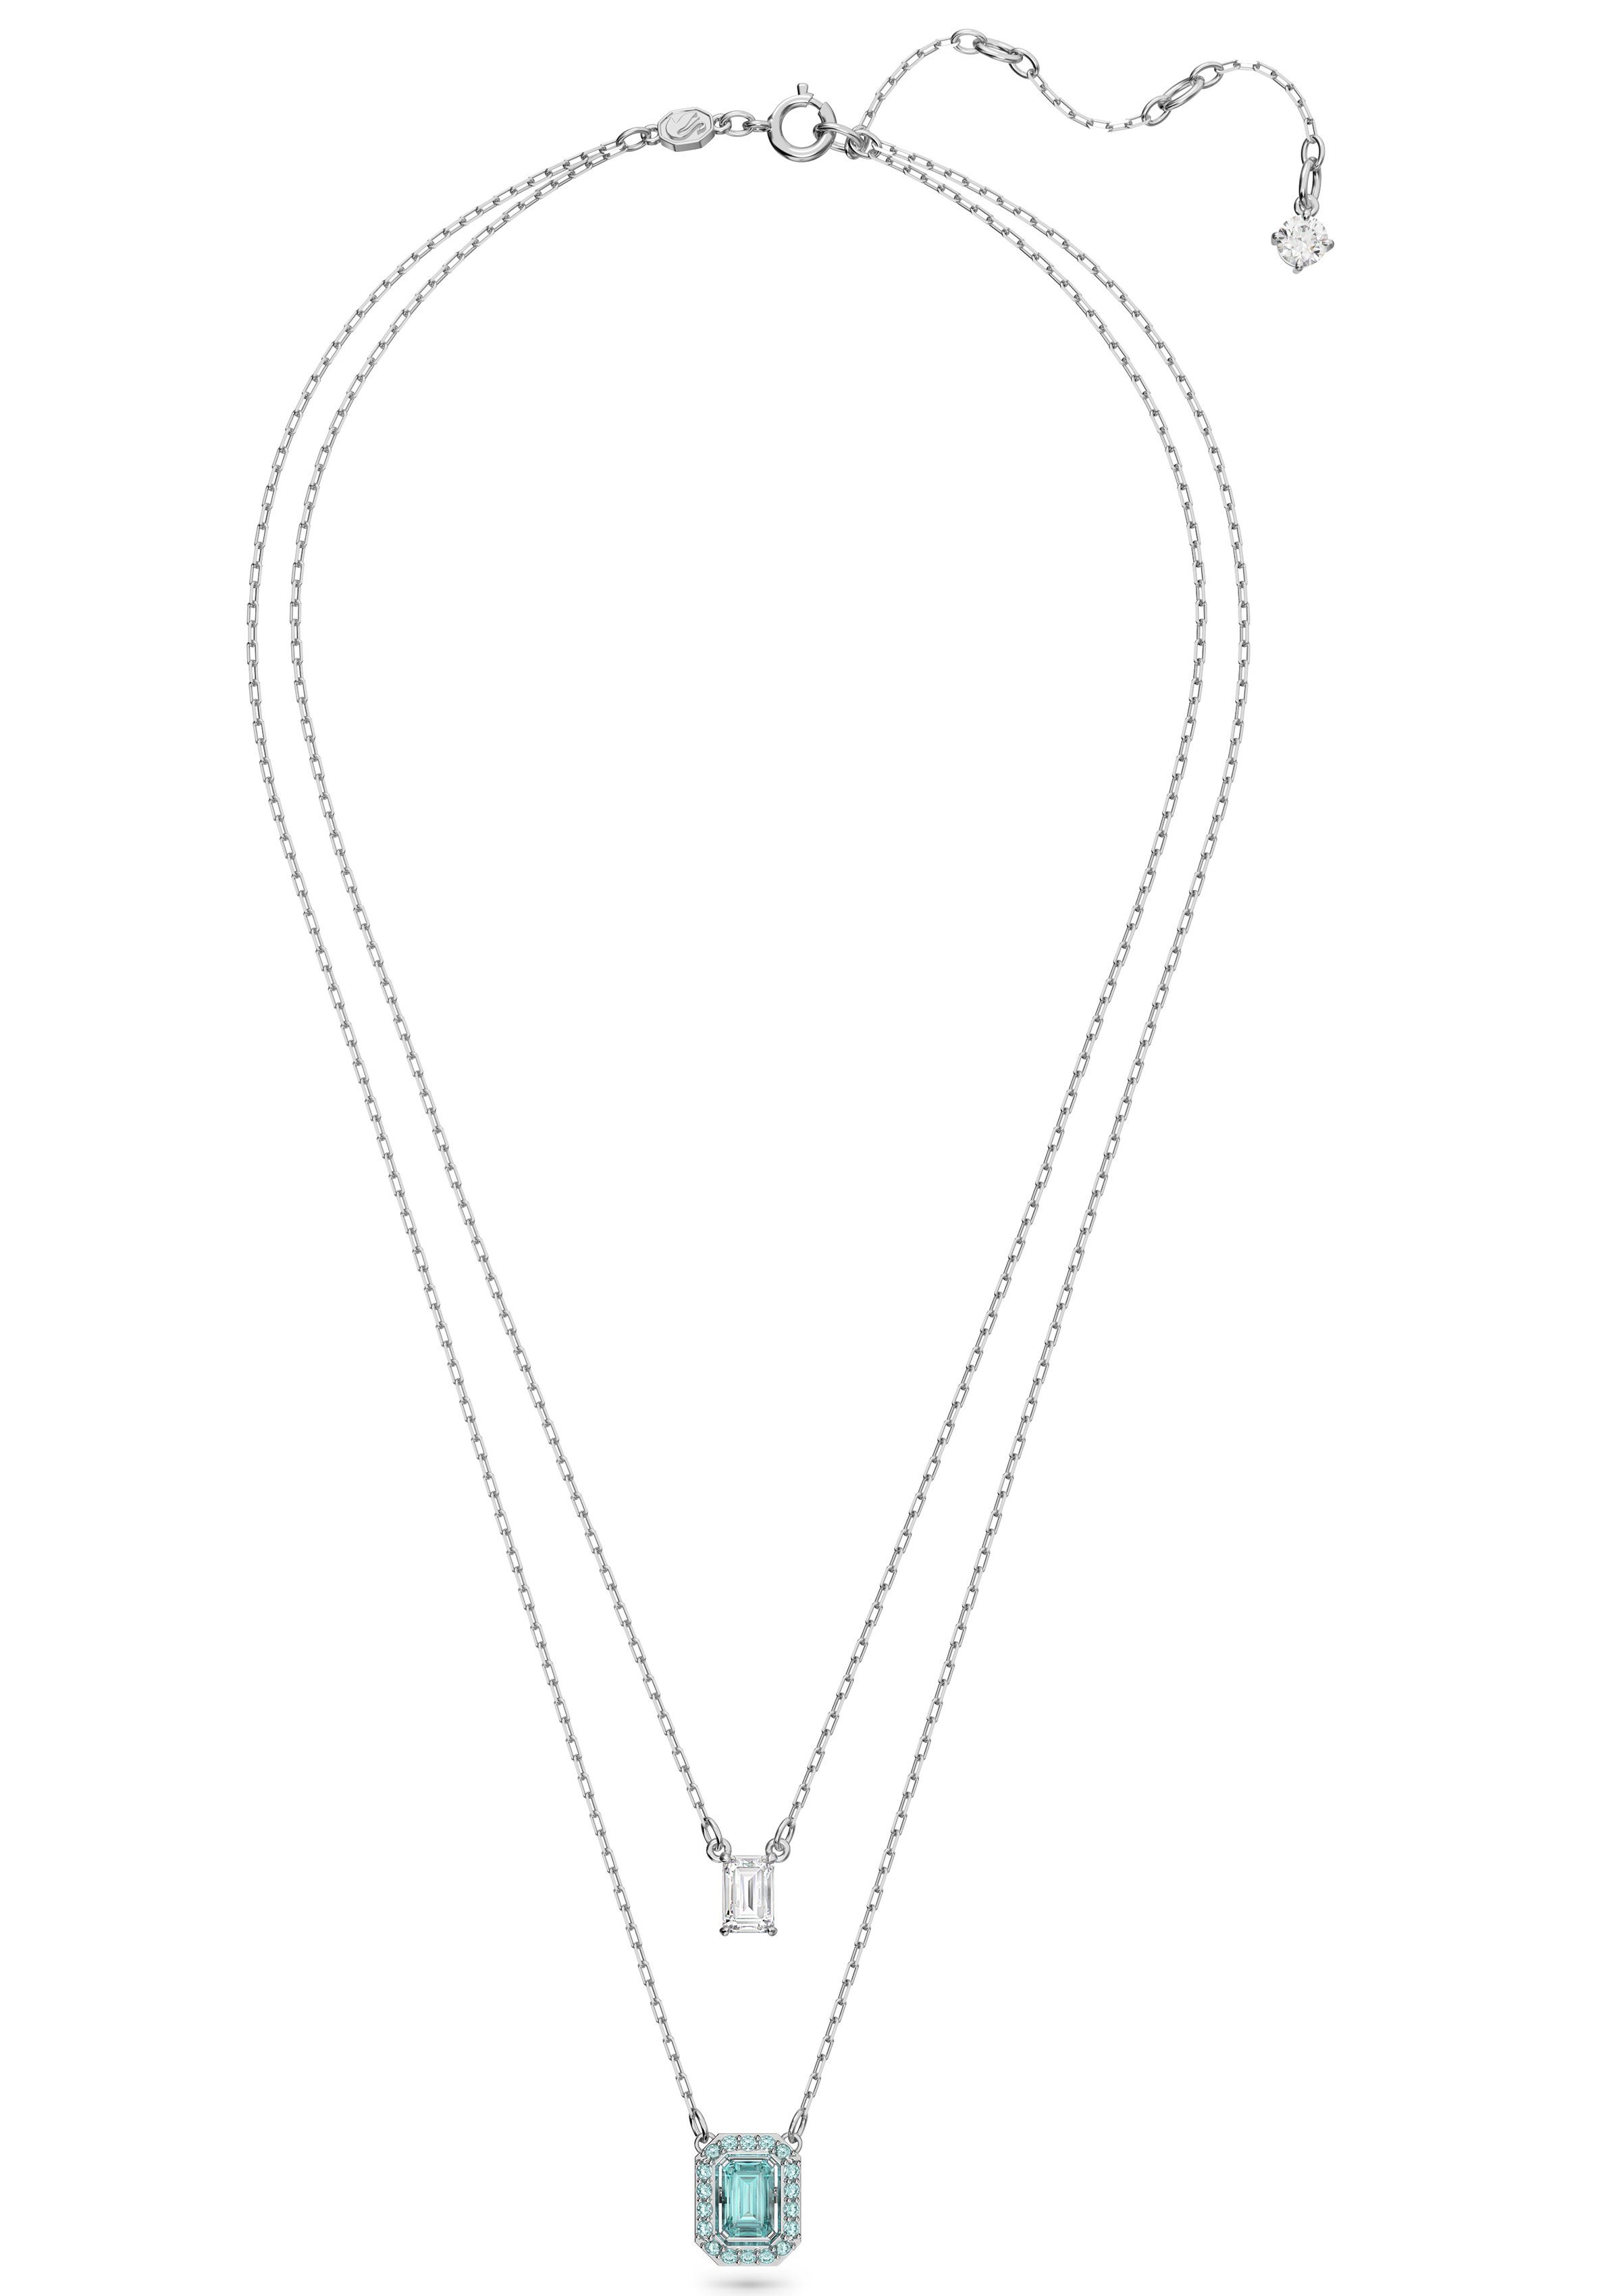 Swarovski Kette Halskette Millenia 5640557, Lagenlook, Anhänger Kristall im mit Swarovski® silber mit